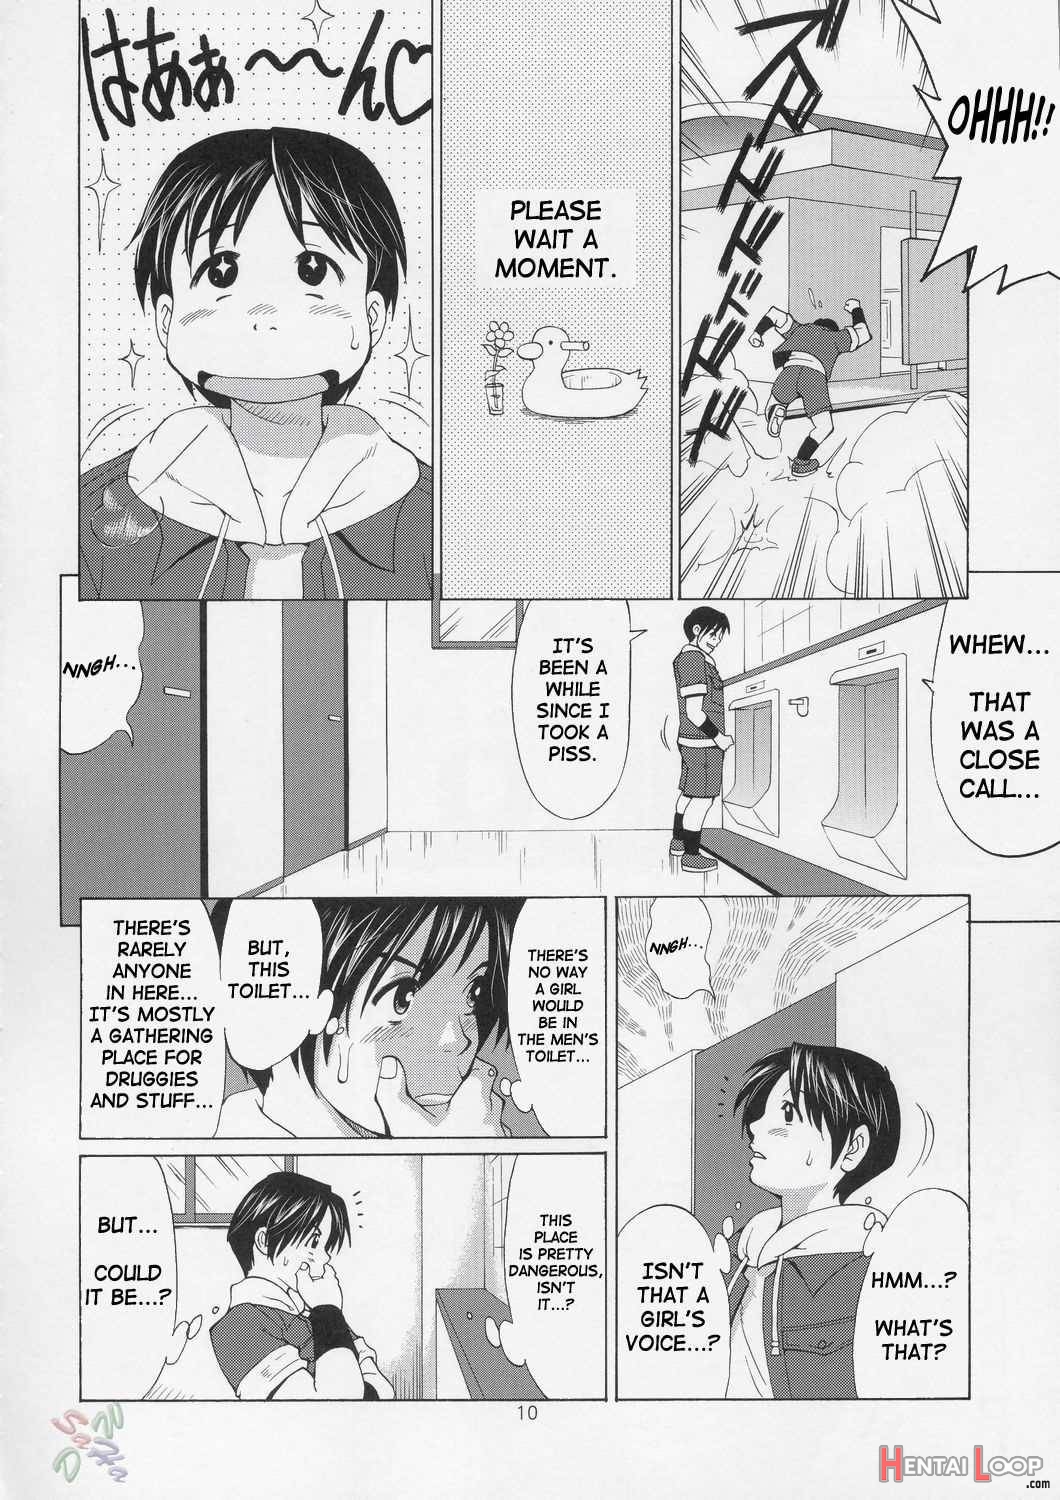 The Yuri&friends - Hinako-max page 10